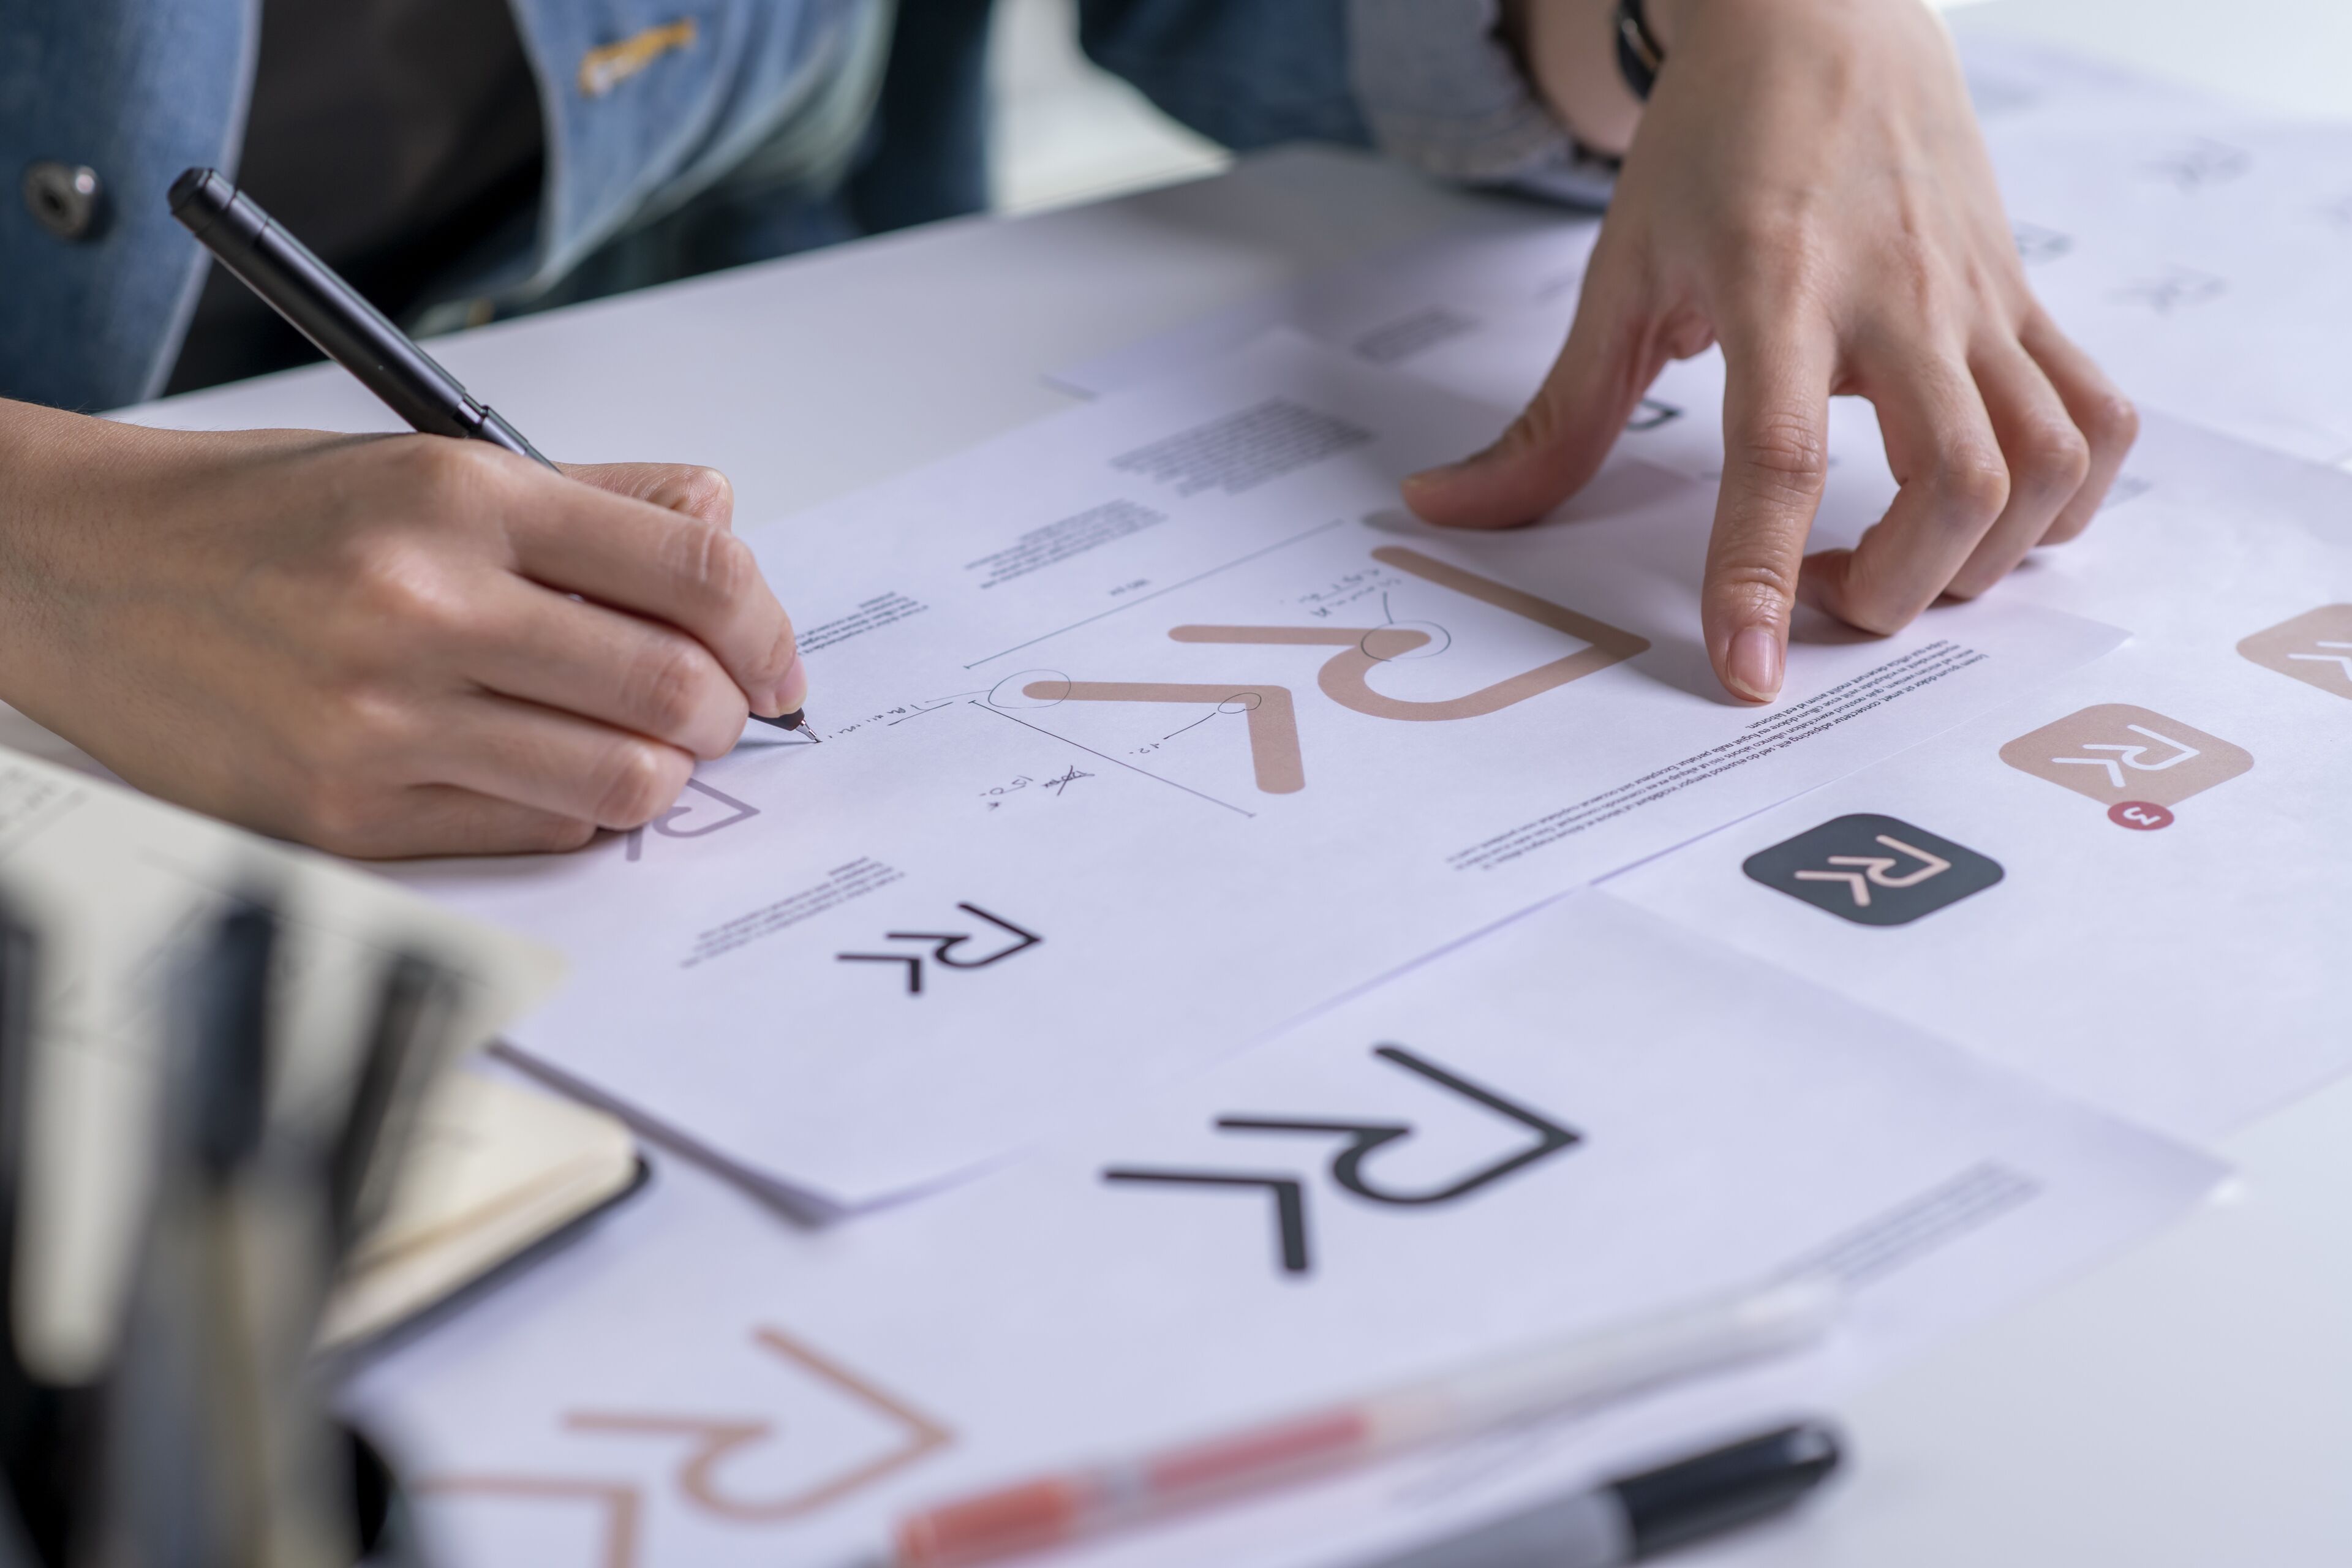 Une personne examine et annote un ensemble de symboles de design graphique, possiblement pour une marque, stylo en main.